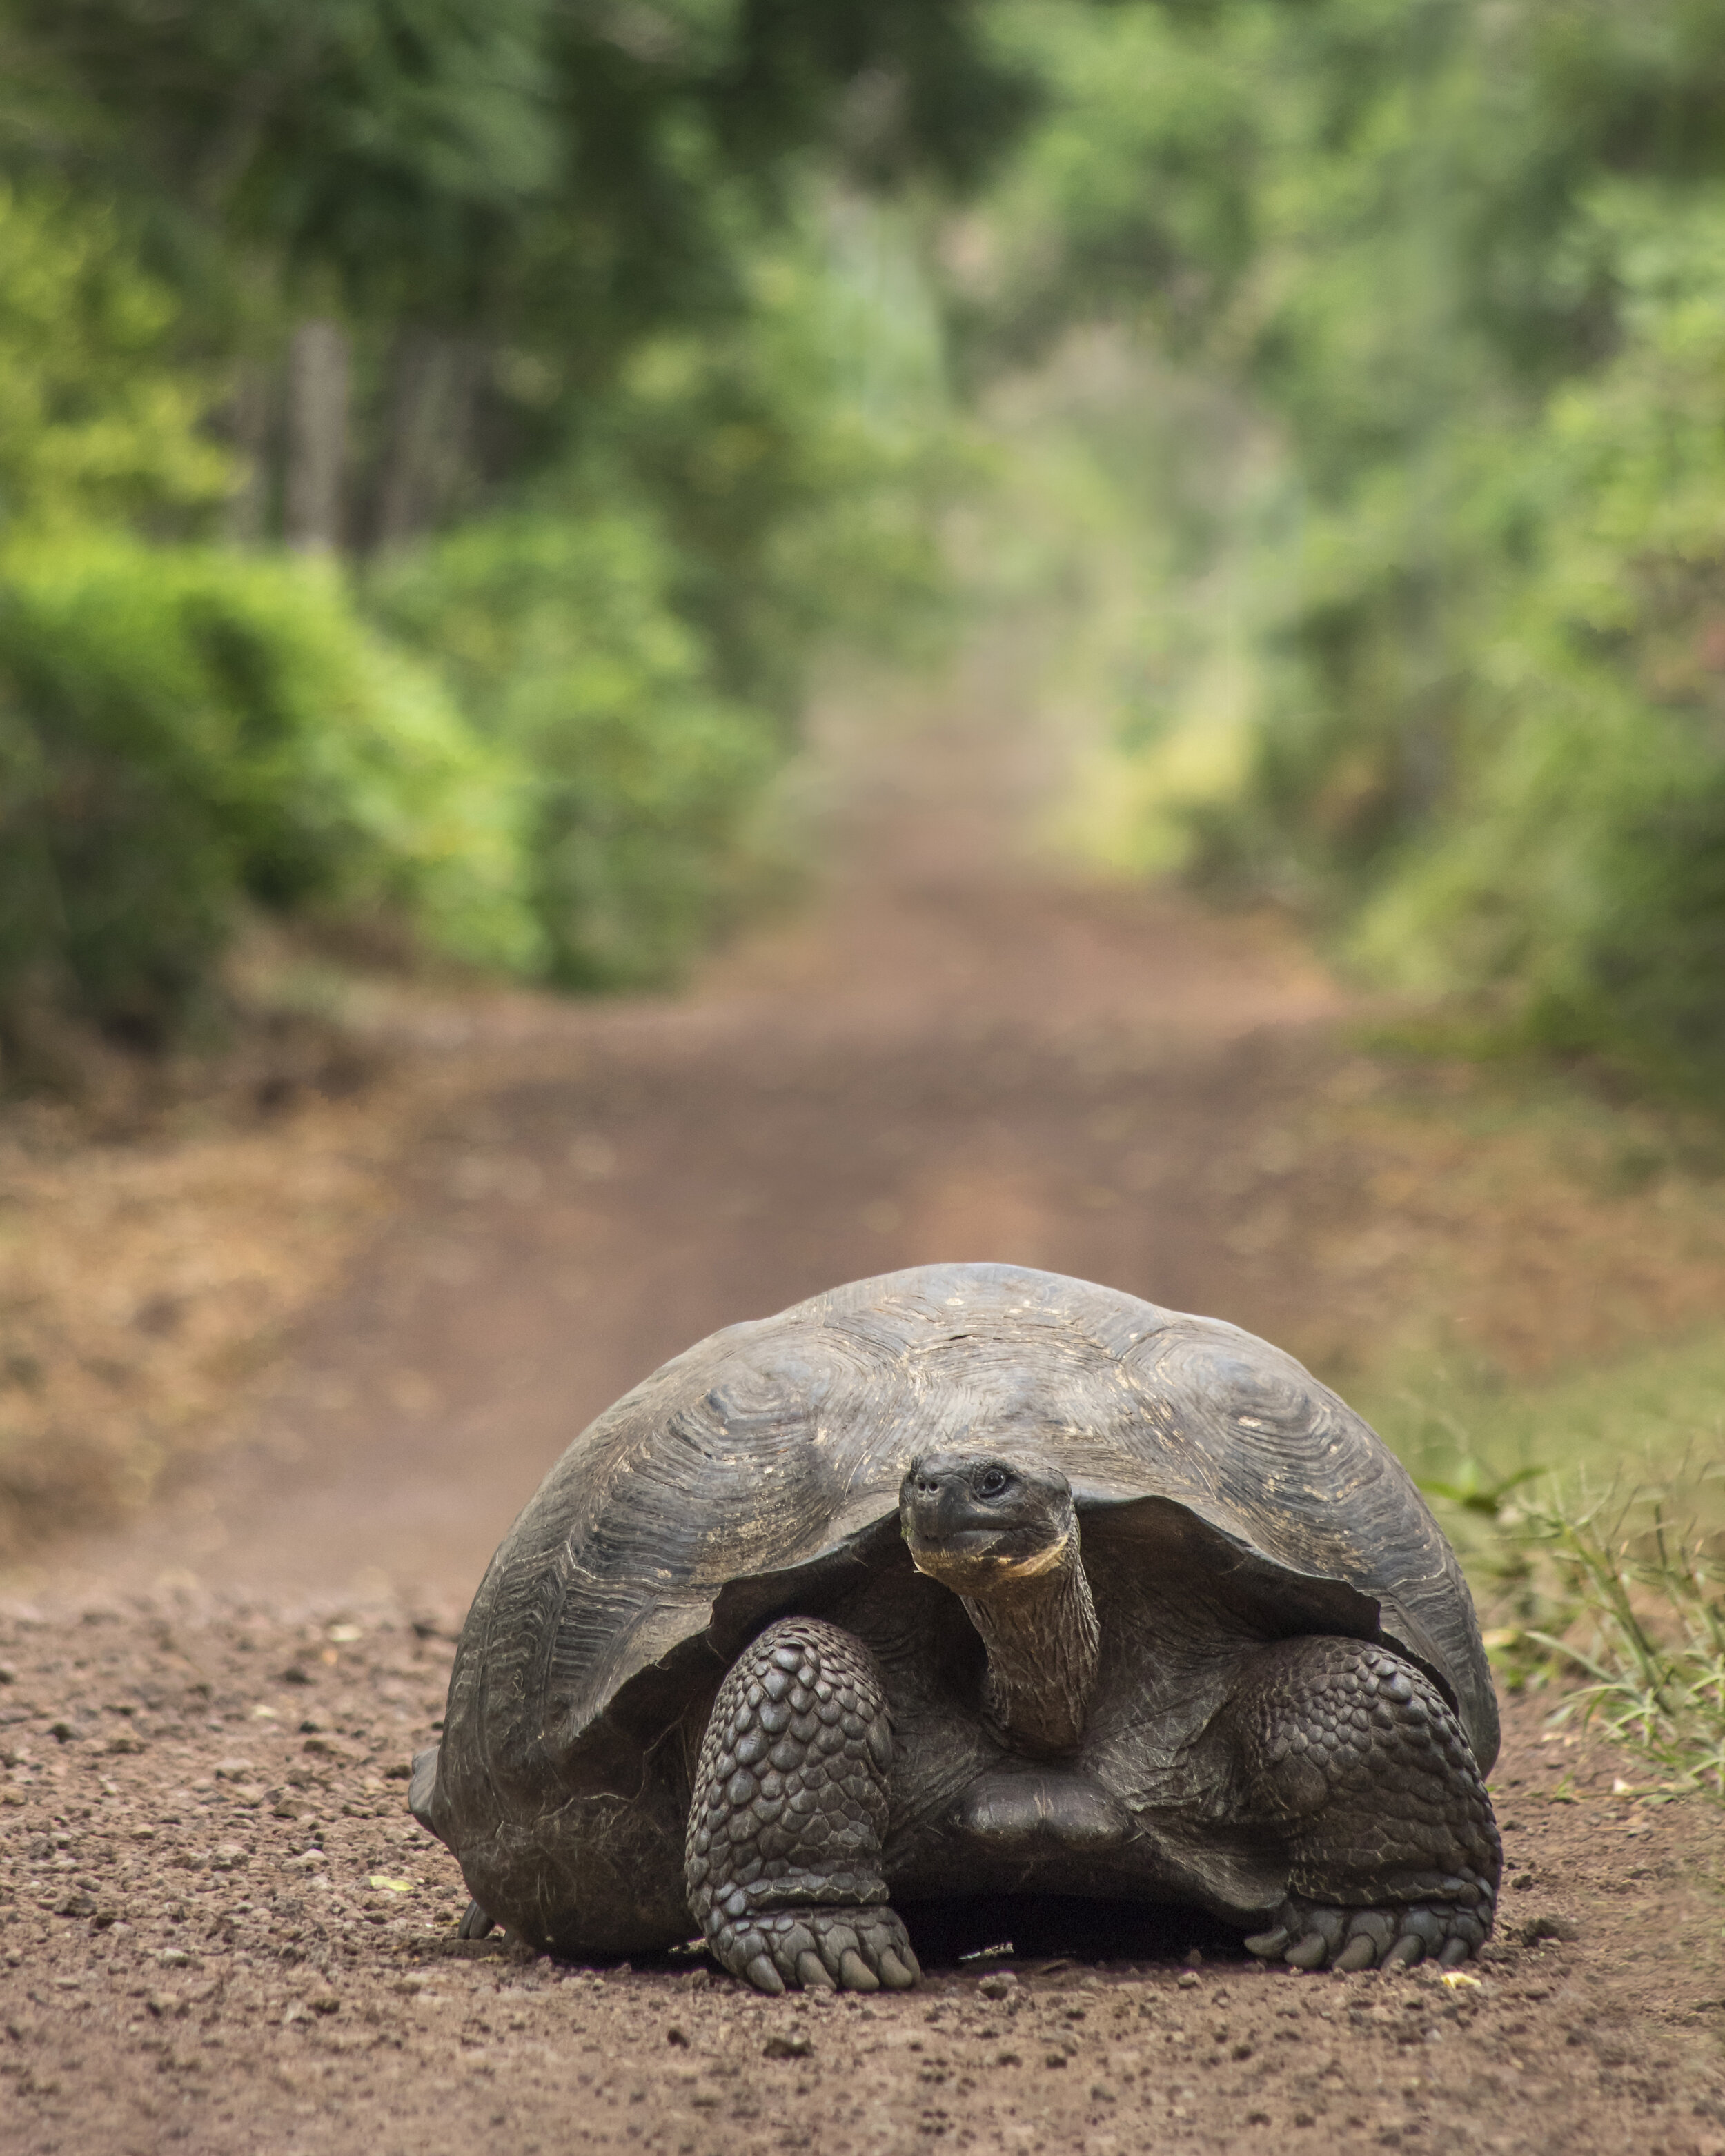 Giant Tortoise (Galapagos Islands)